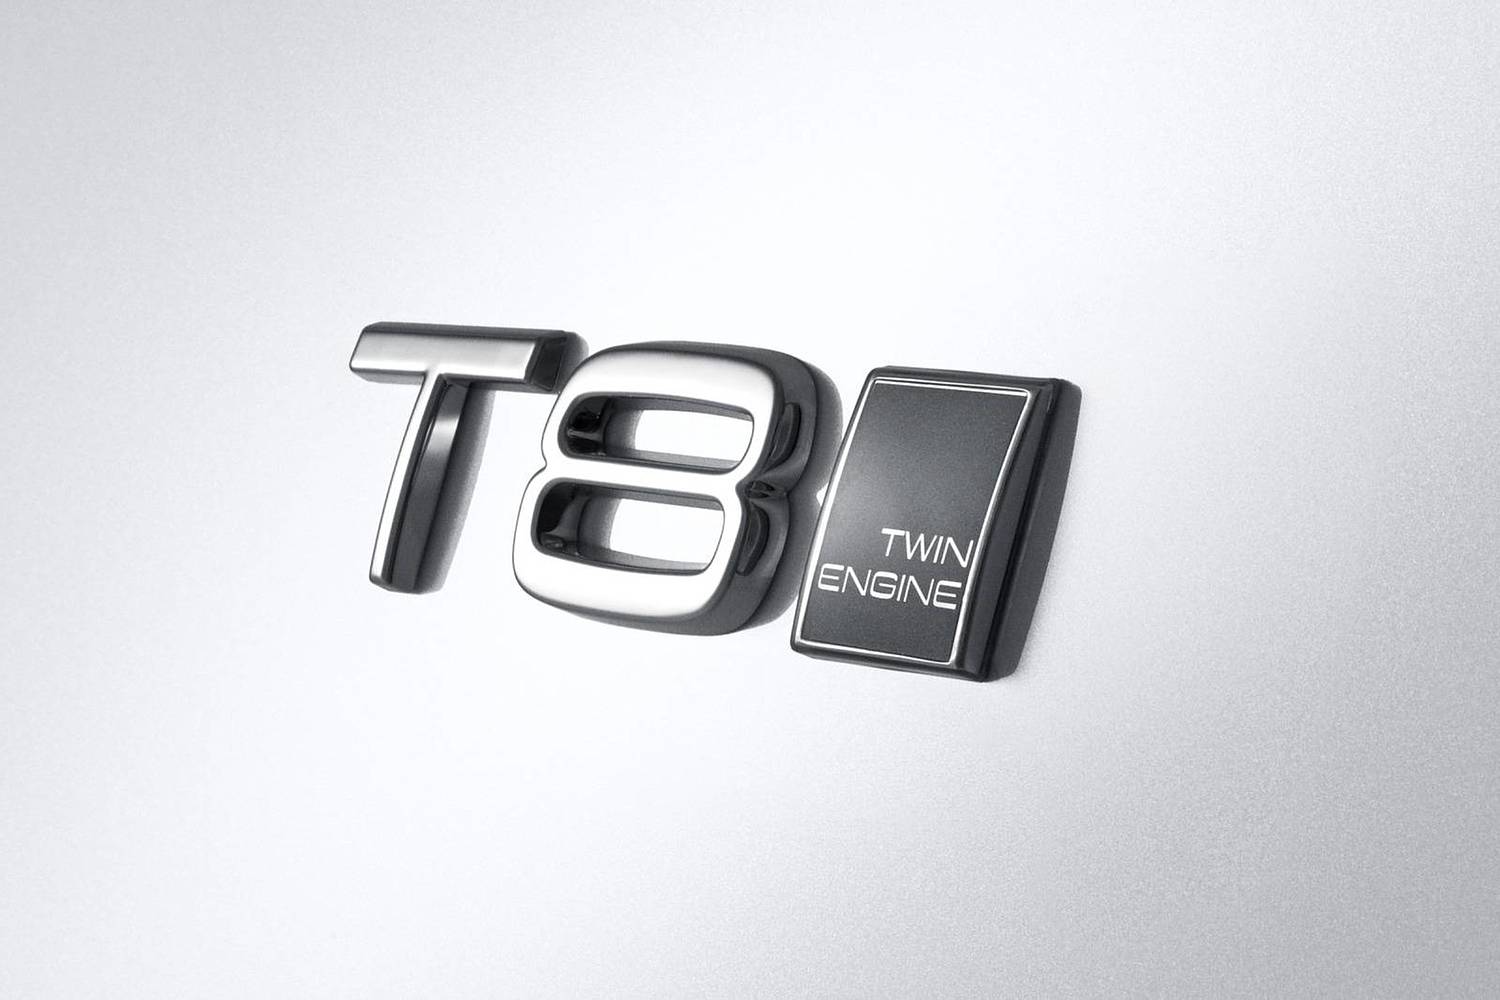 2018 Volvo XC90 T8 Inscription Twin Engine Plug-In Hybrid 4dr SUV Rear Badge